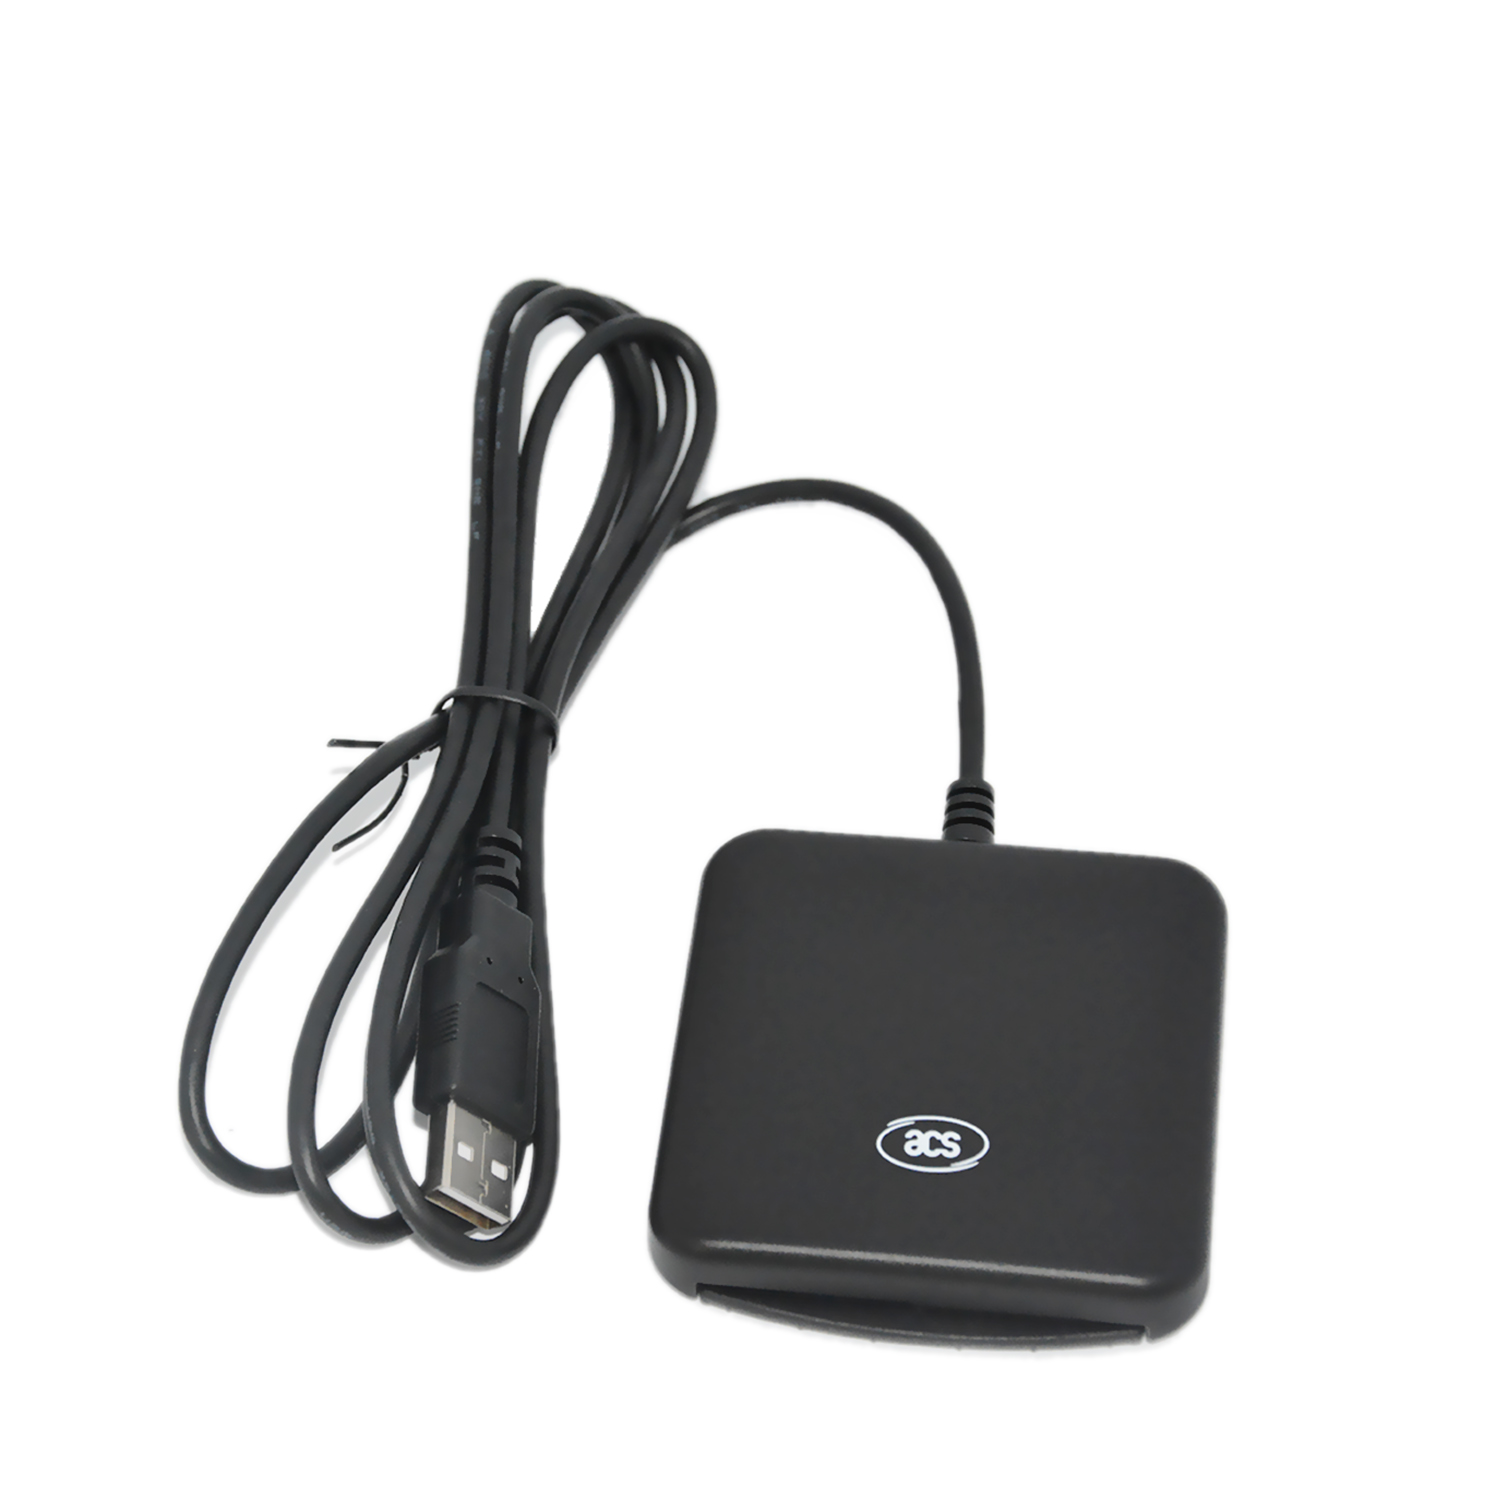 适用于政府服务的 USB A 型 PC-Link 银联接触式智能卡读卡器 ACR39U-U1